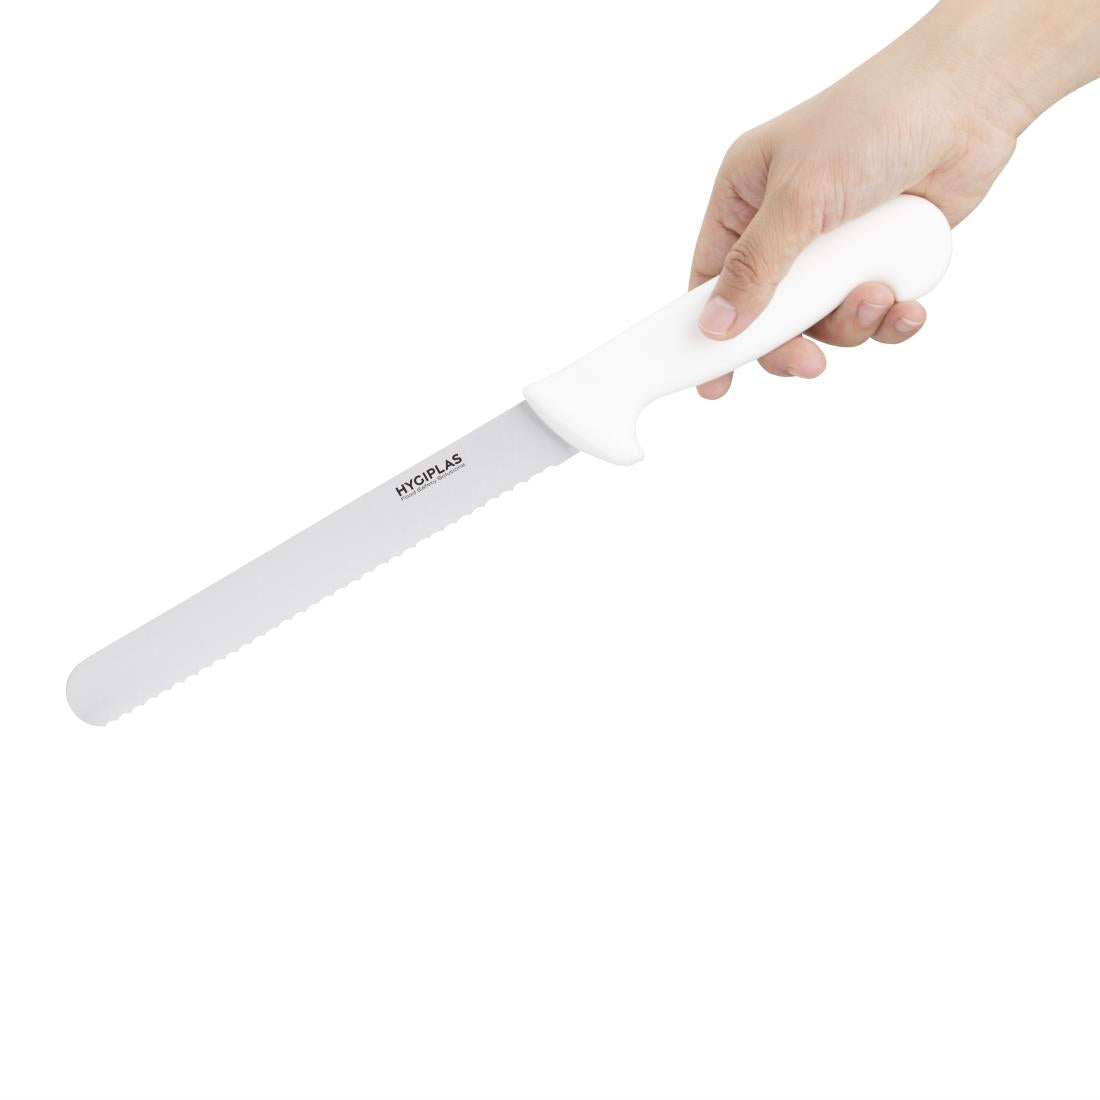 C882 Hygiplas Bread Knife White 20.5cm JD Catering Equipment Solutions Ltd